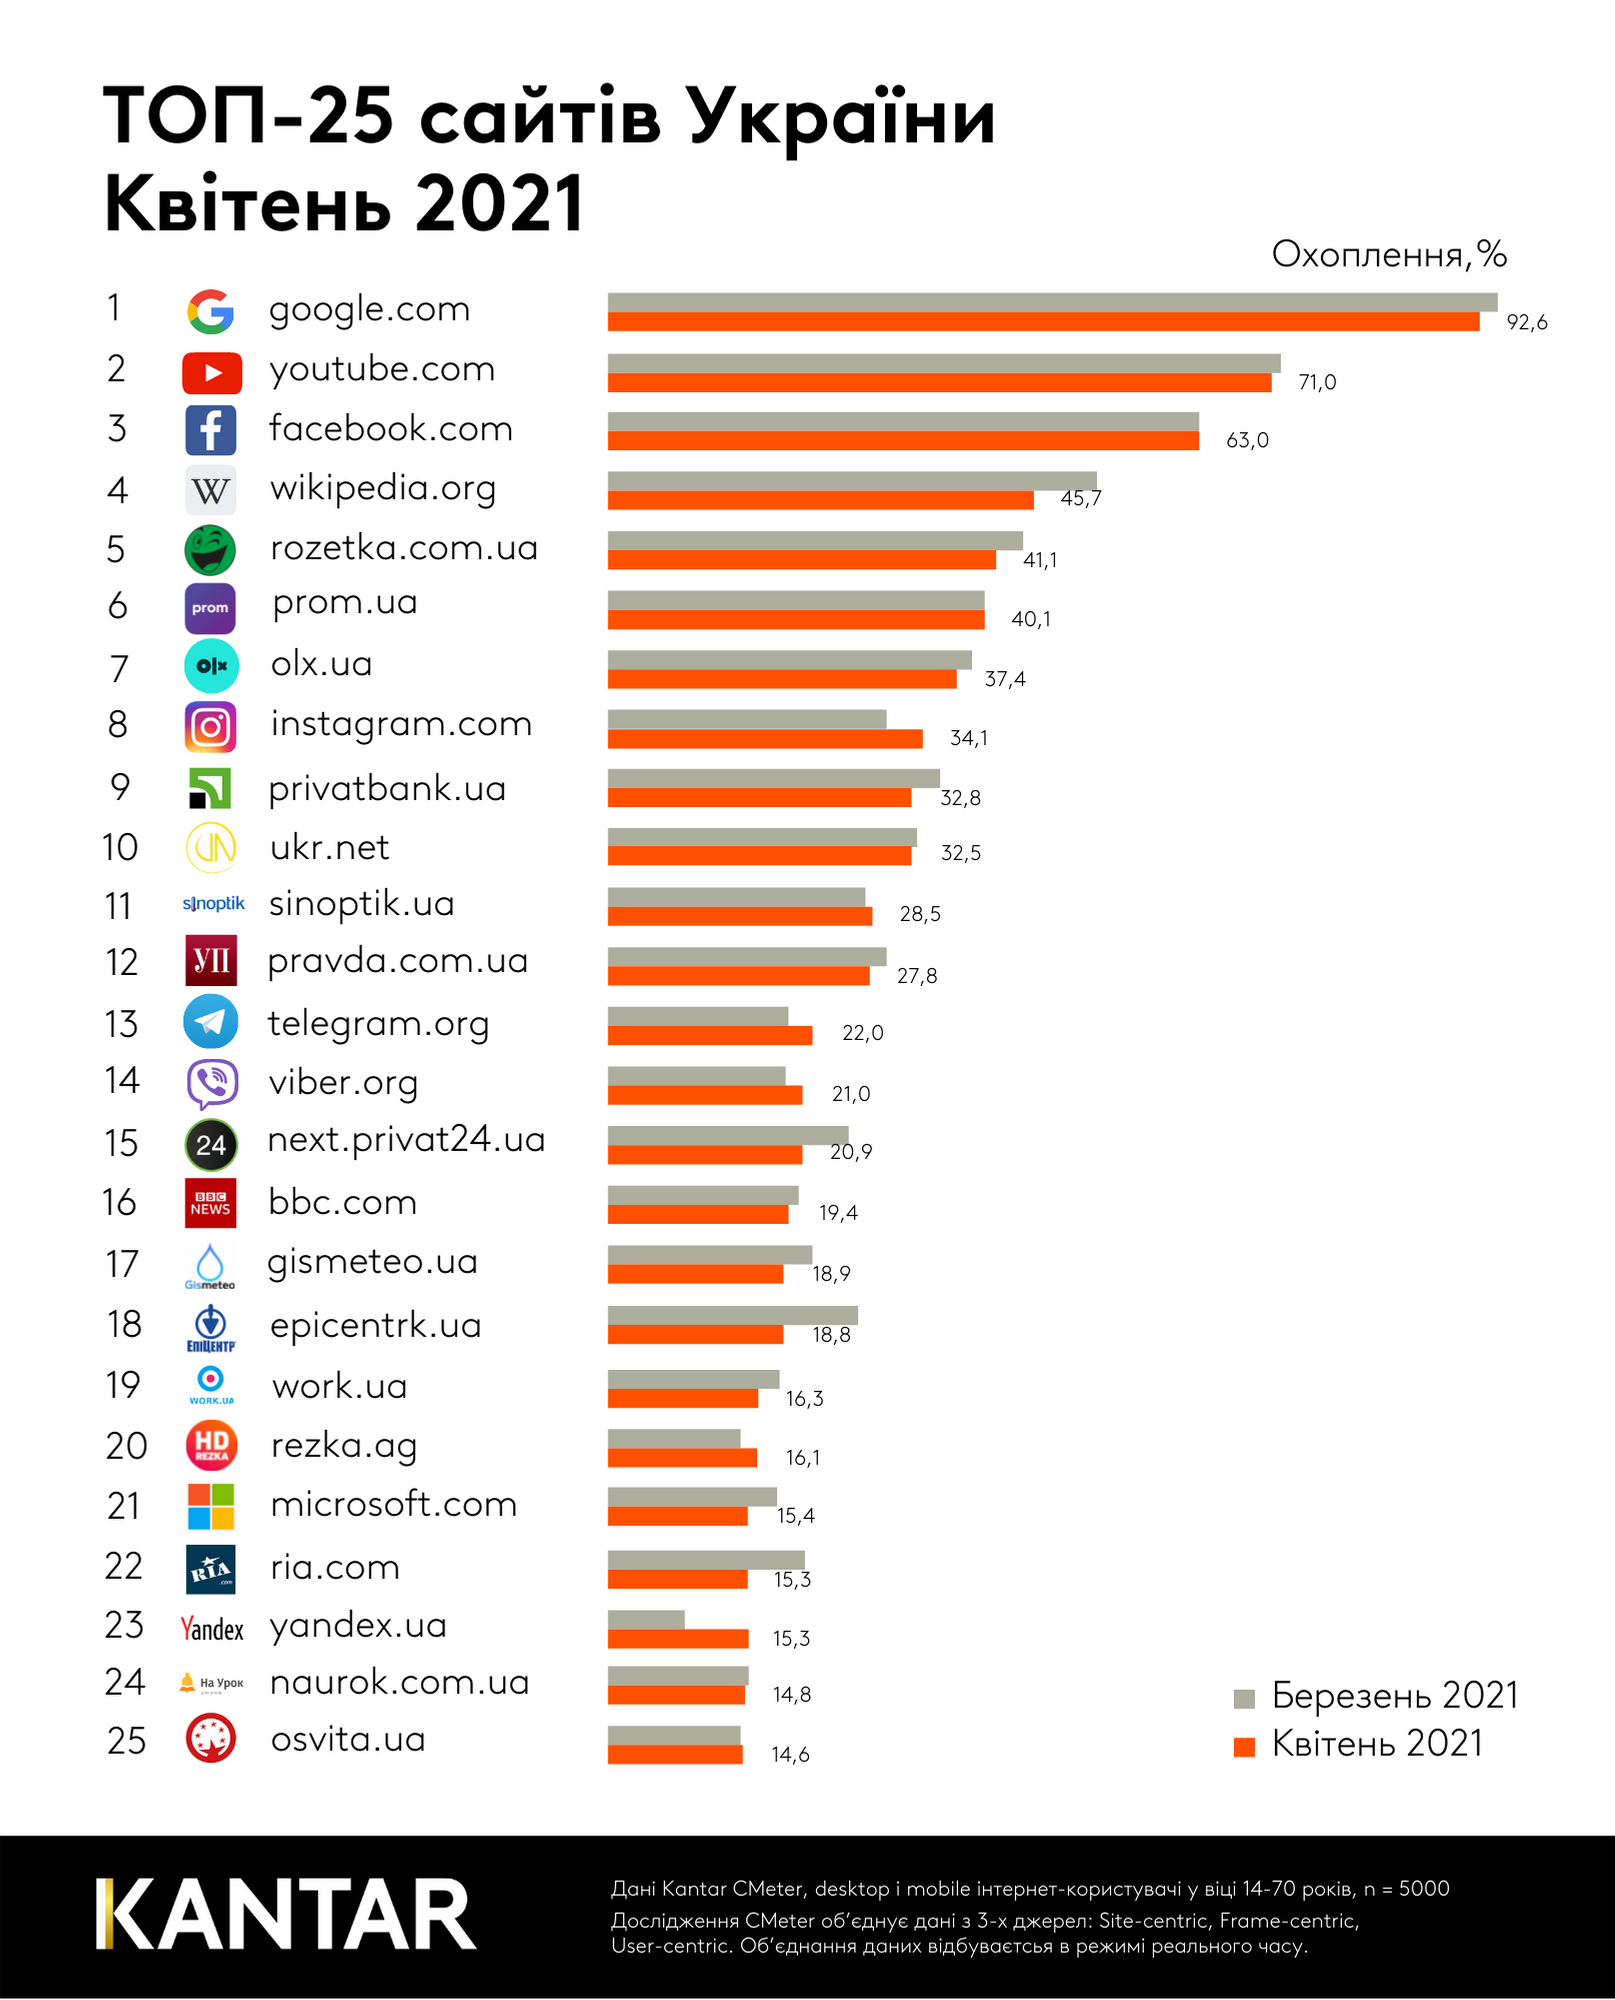 Найпопулярніші сайти серед українців за квітень 2021 року